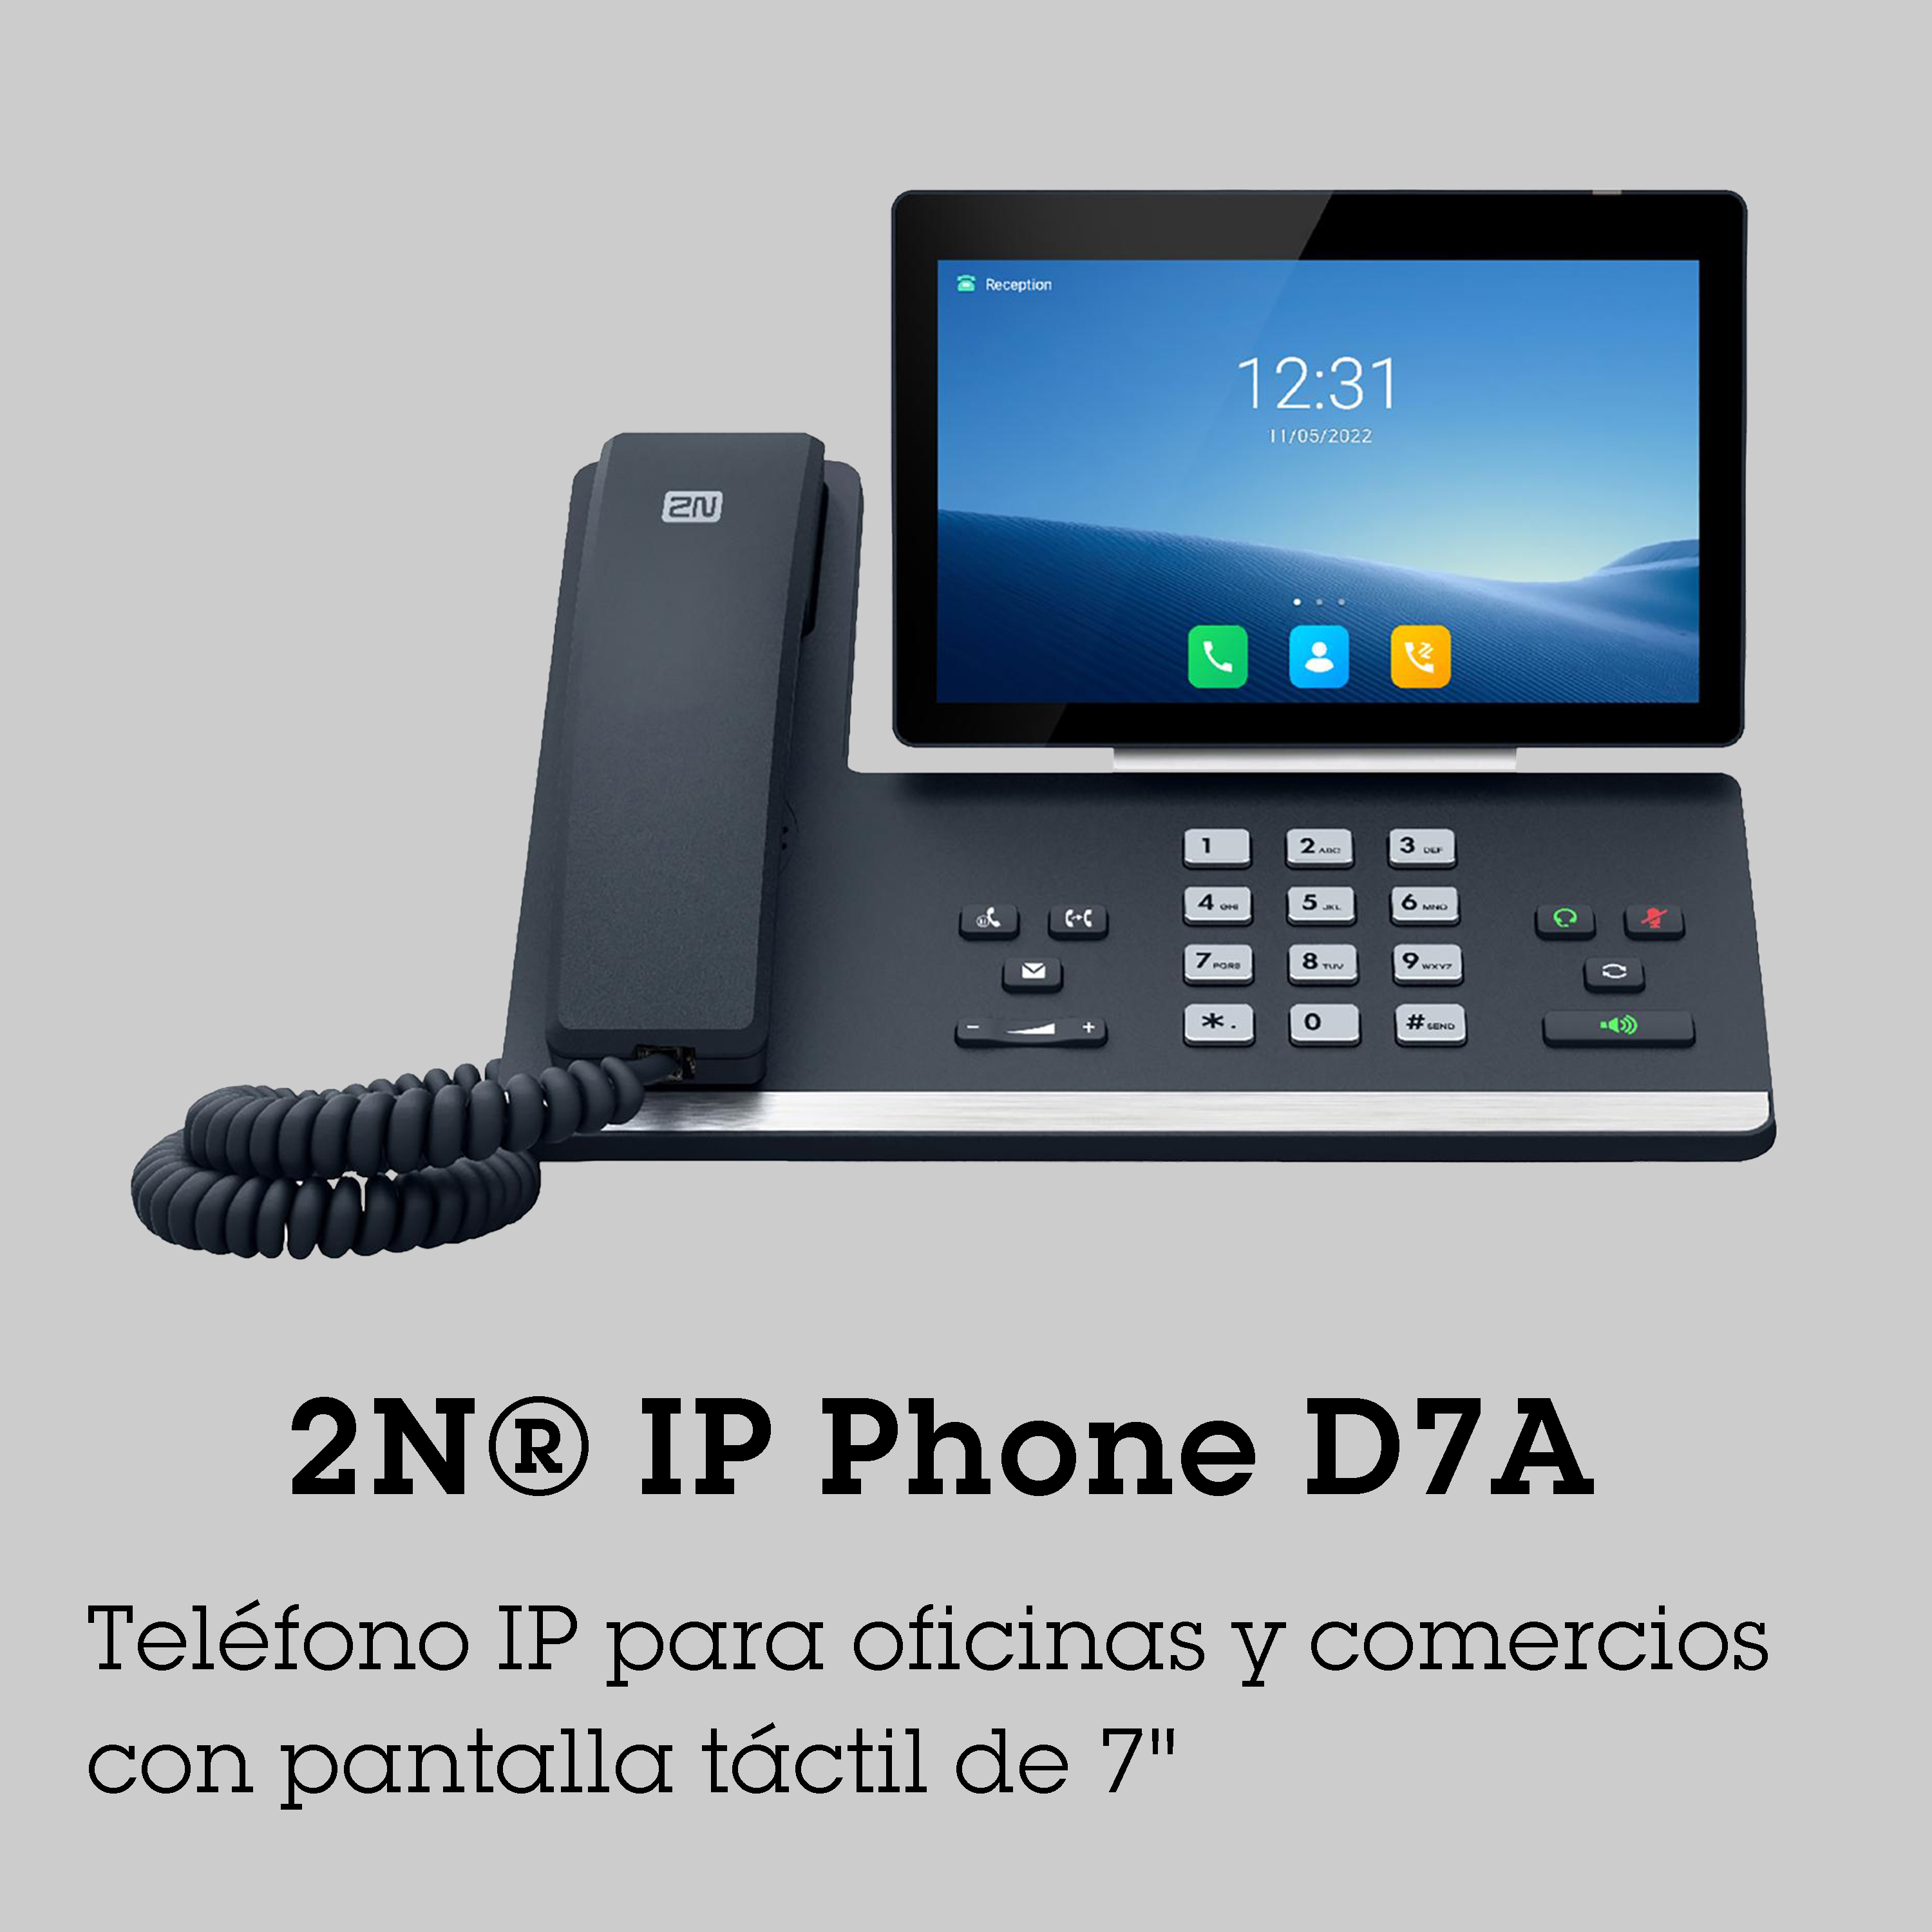 2N IP Phone D7A